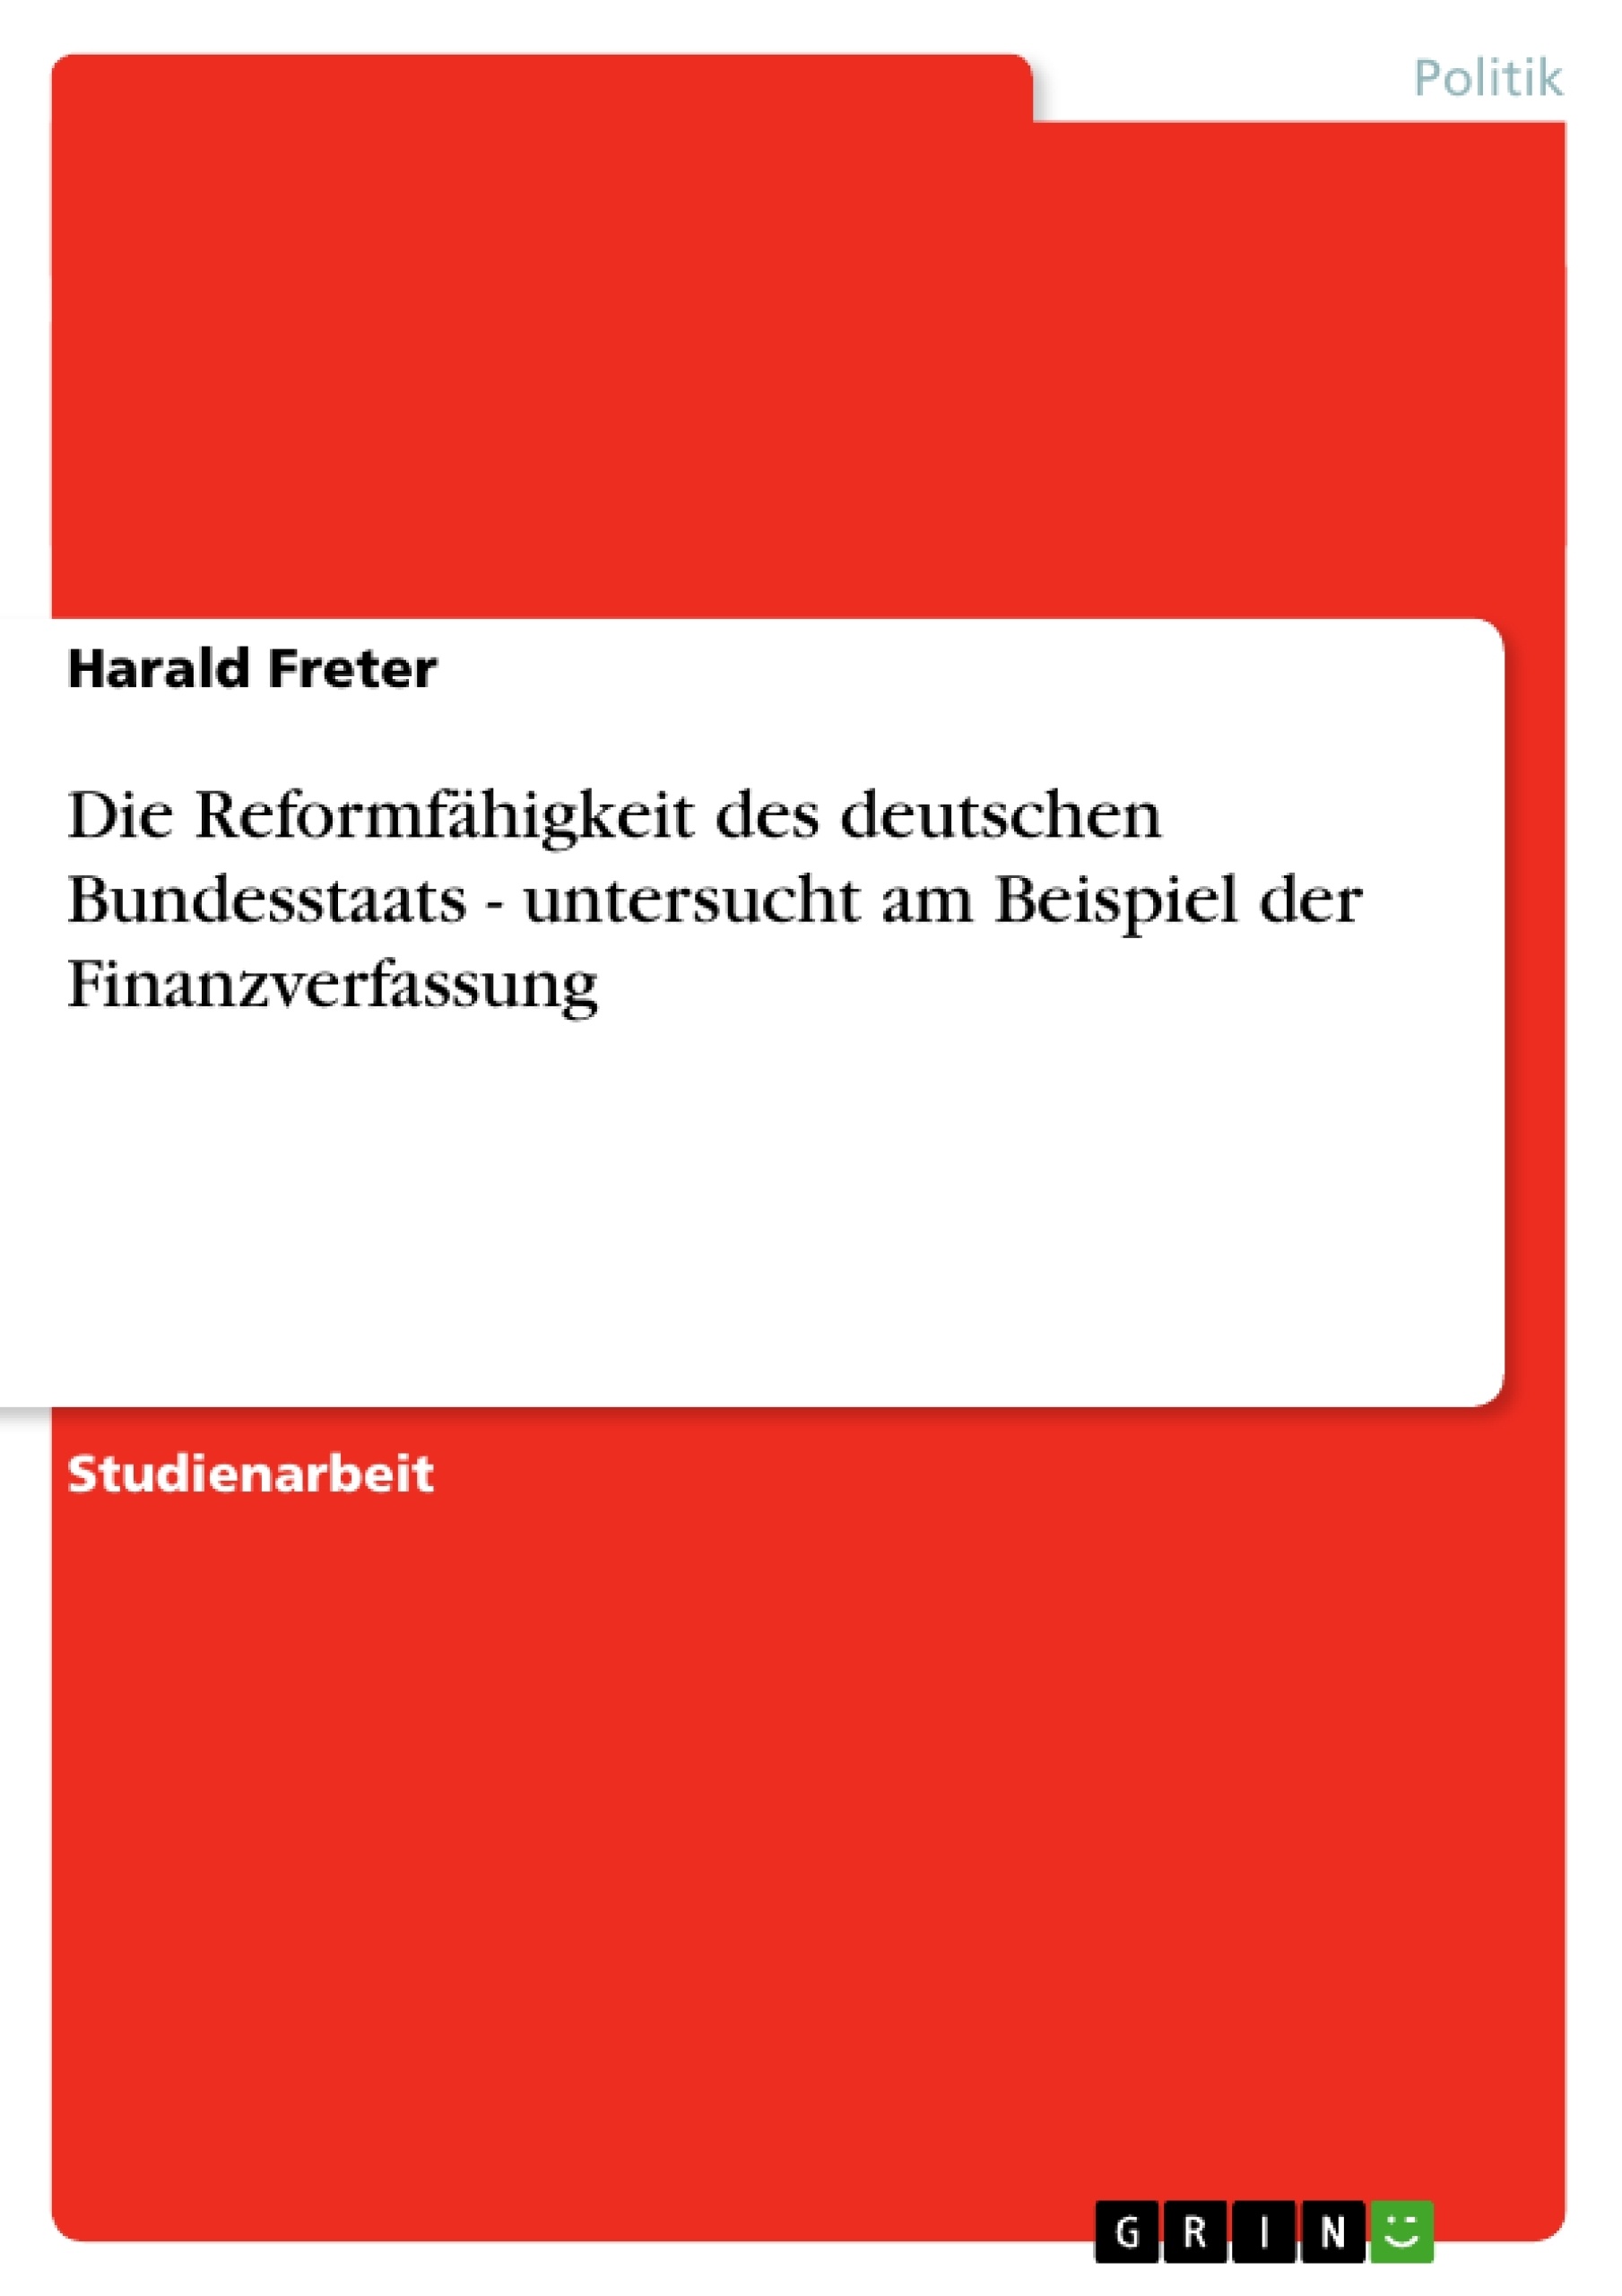 Title: Die Reformfähigkeit des deutschen Bundesstaats - untersucht am Beispiel der Finanzverfassung